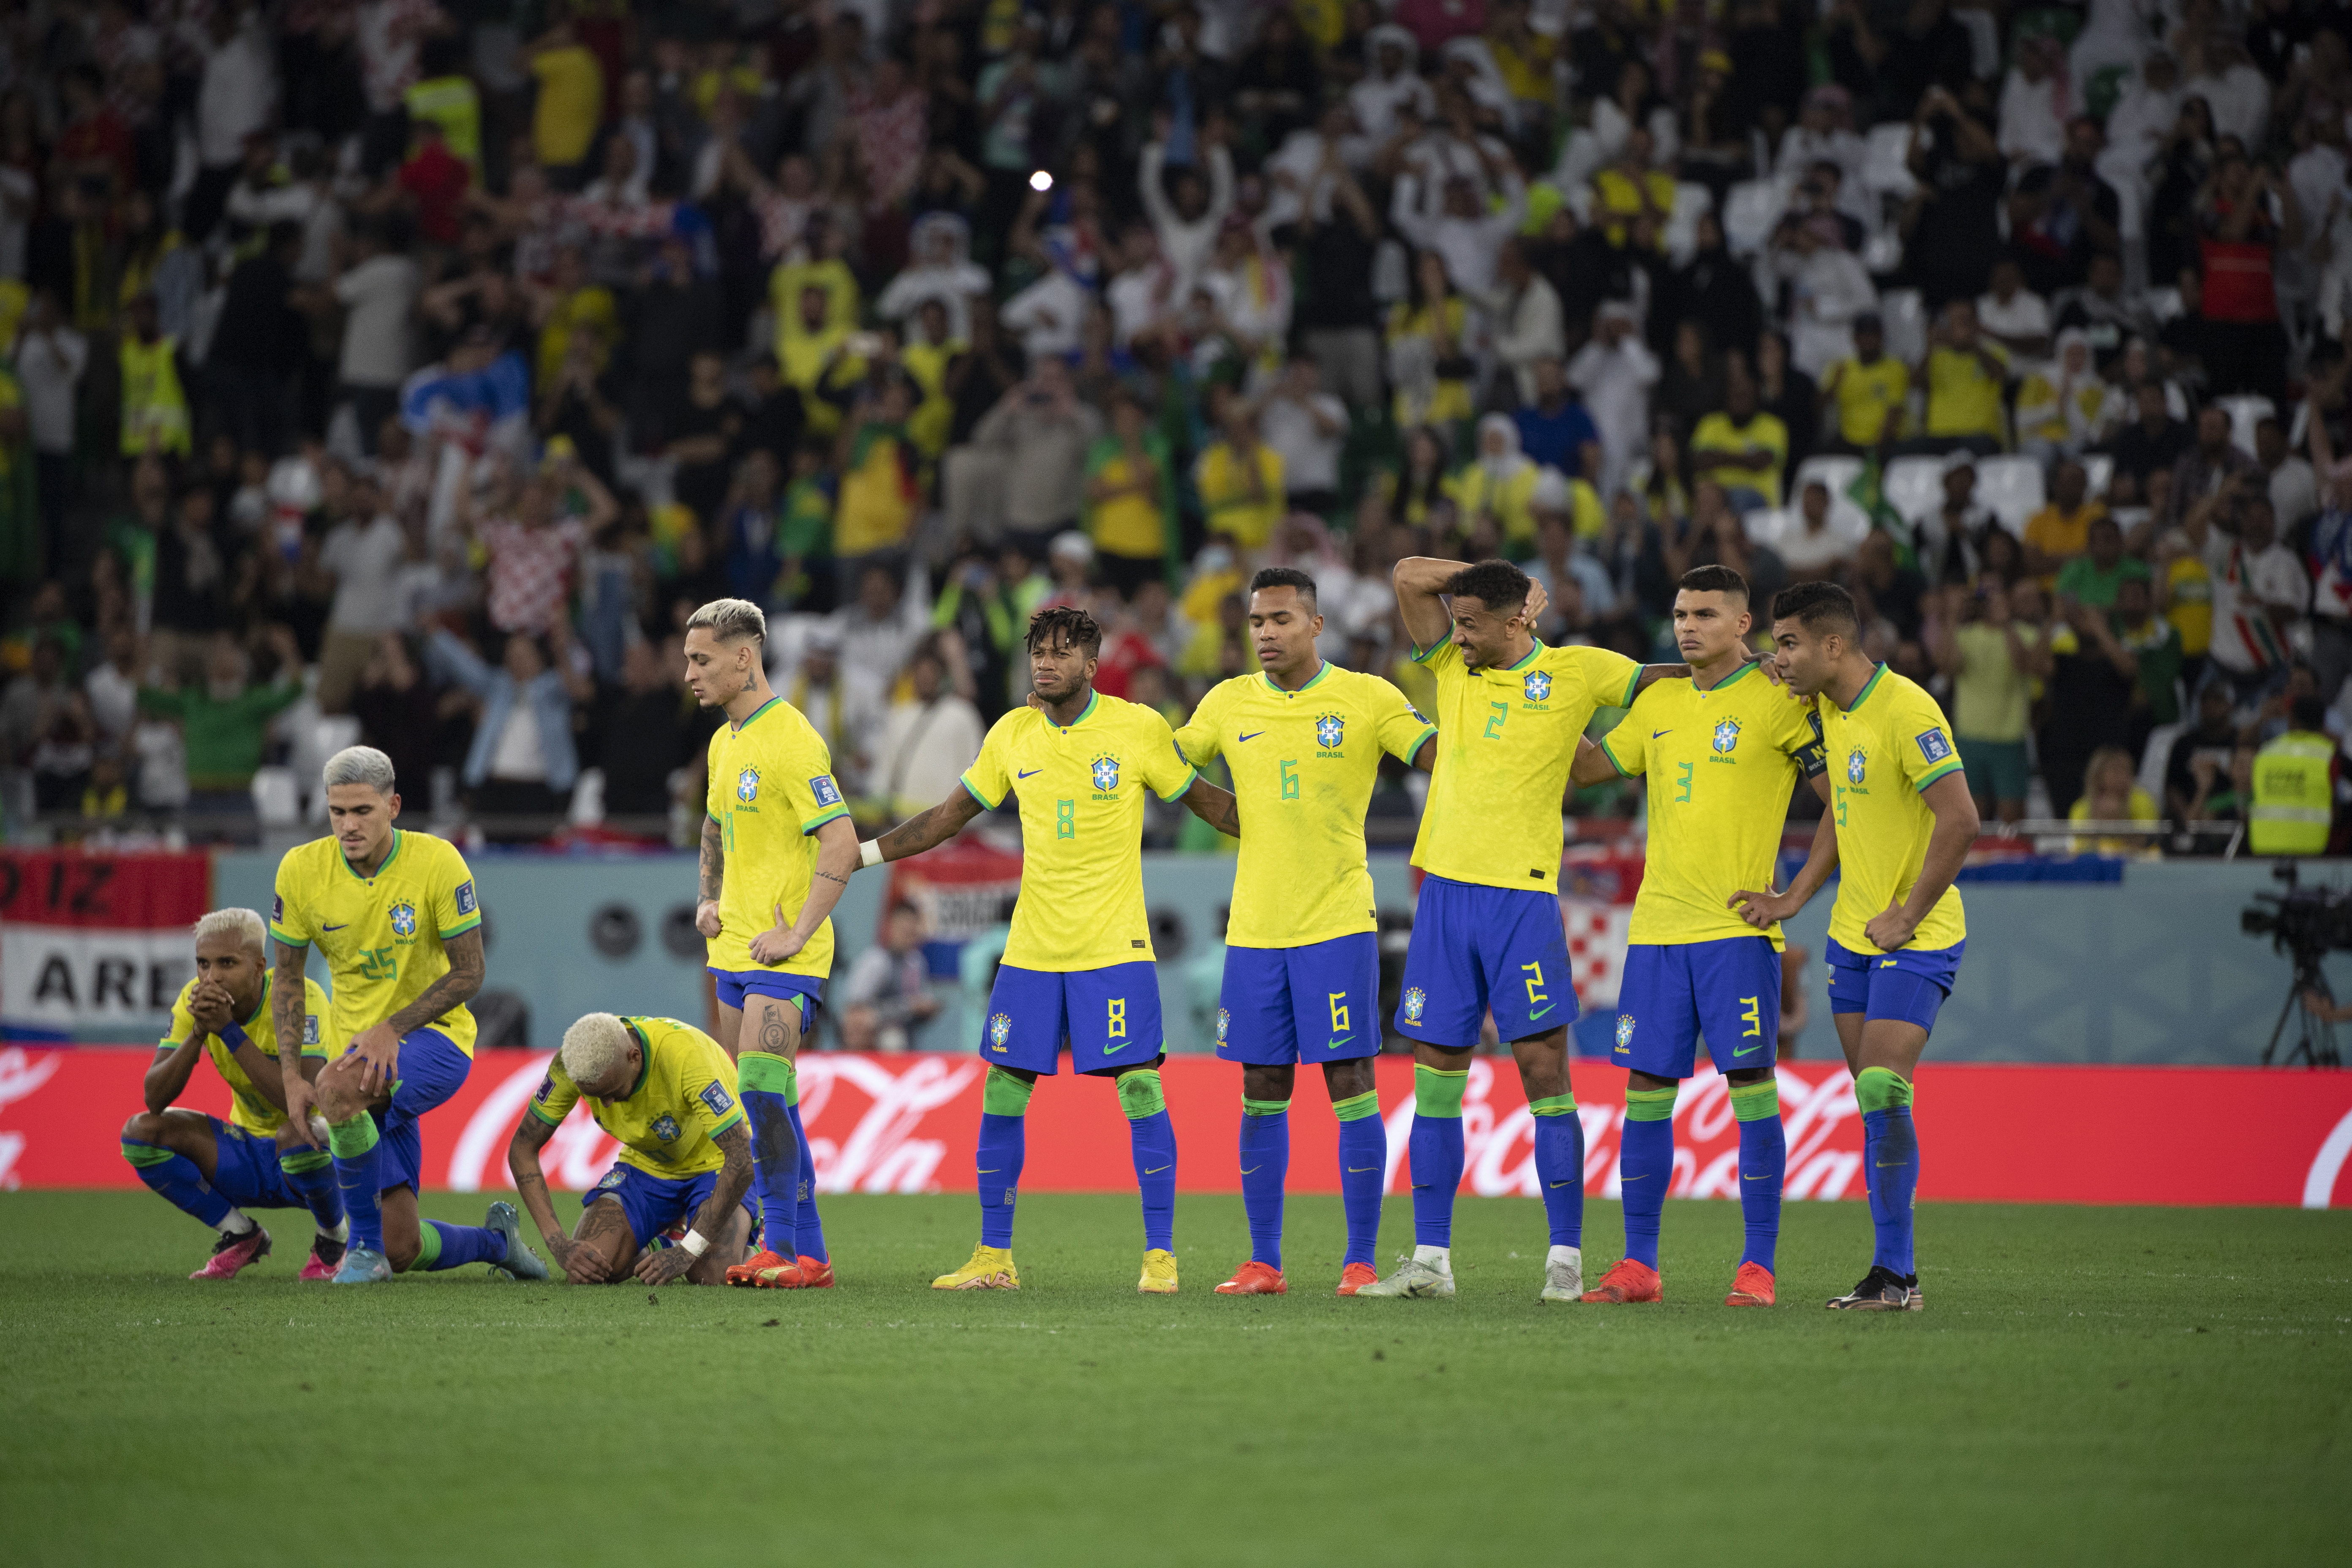 Veja os jogos da primeira fase da Copa do Brasil de 2022 - Placar - O  futebol sem barreiras para você